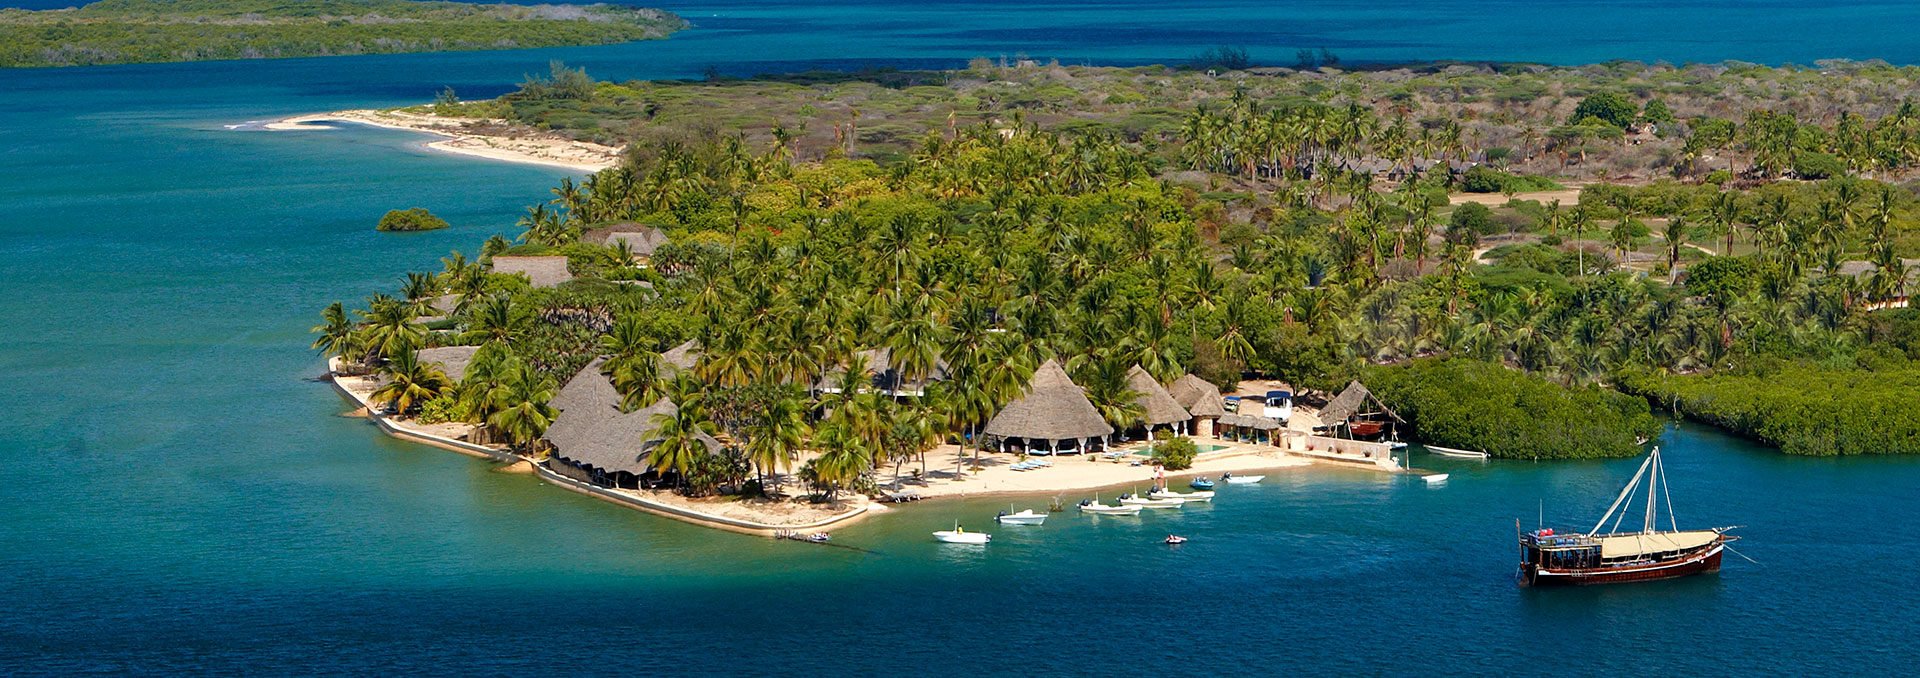 10 Best Hotels in Lamu Island